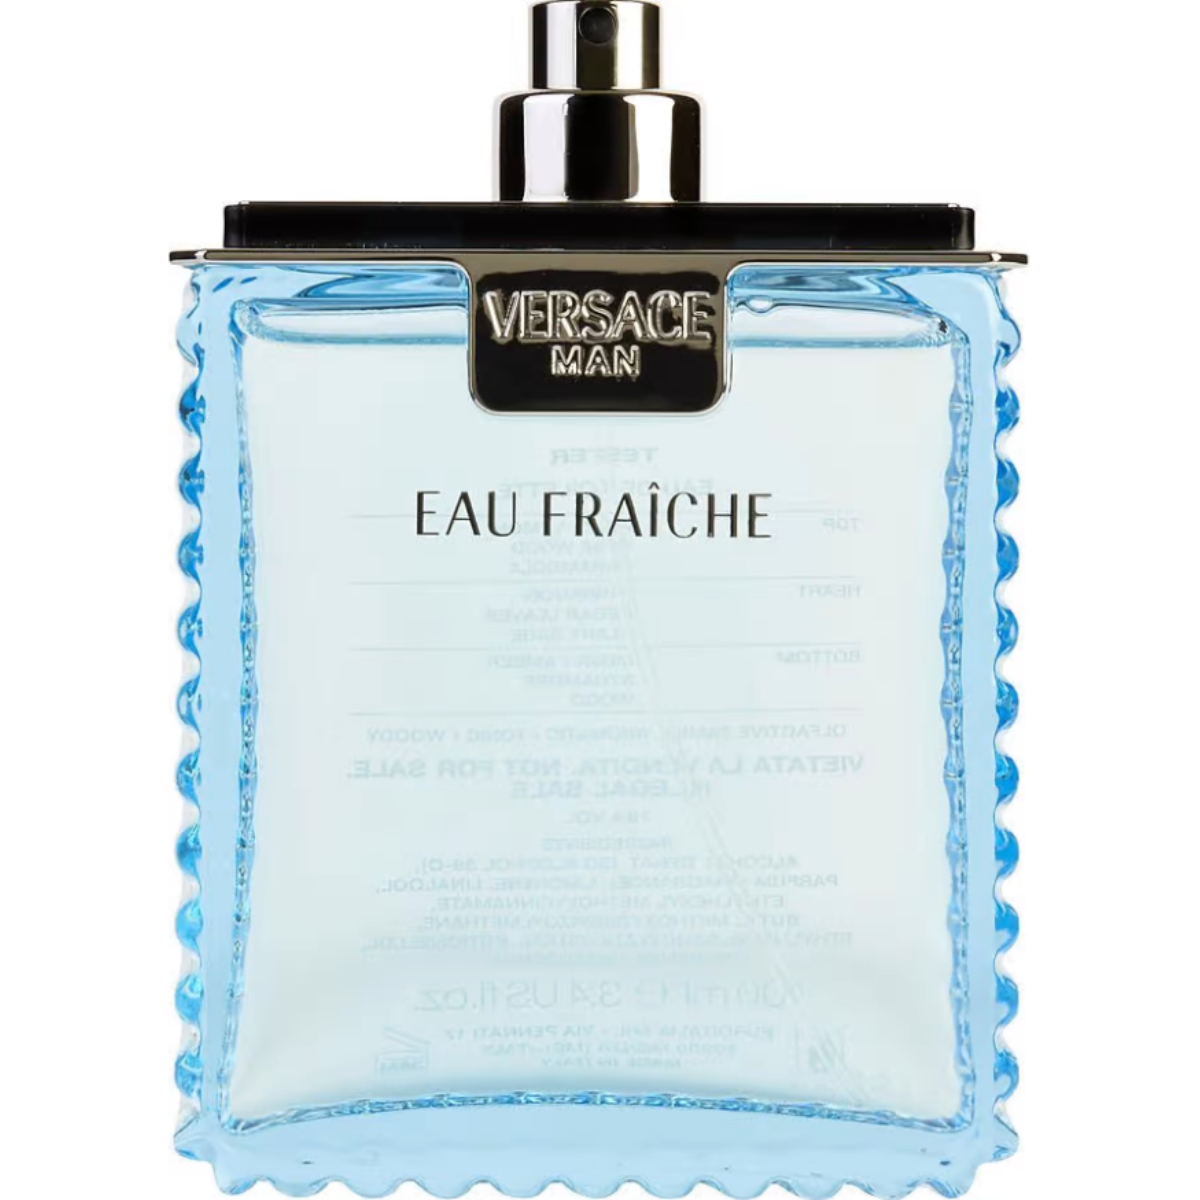 Versace Man by Versace 3.4 oz Eau Fraiche Eau de Toilette Spray (Tester) for Men